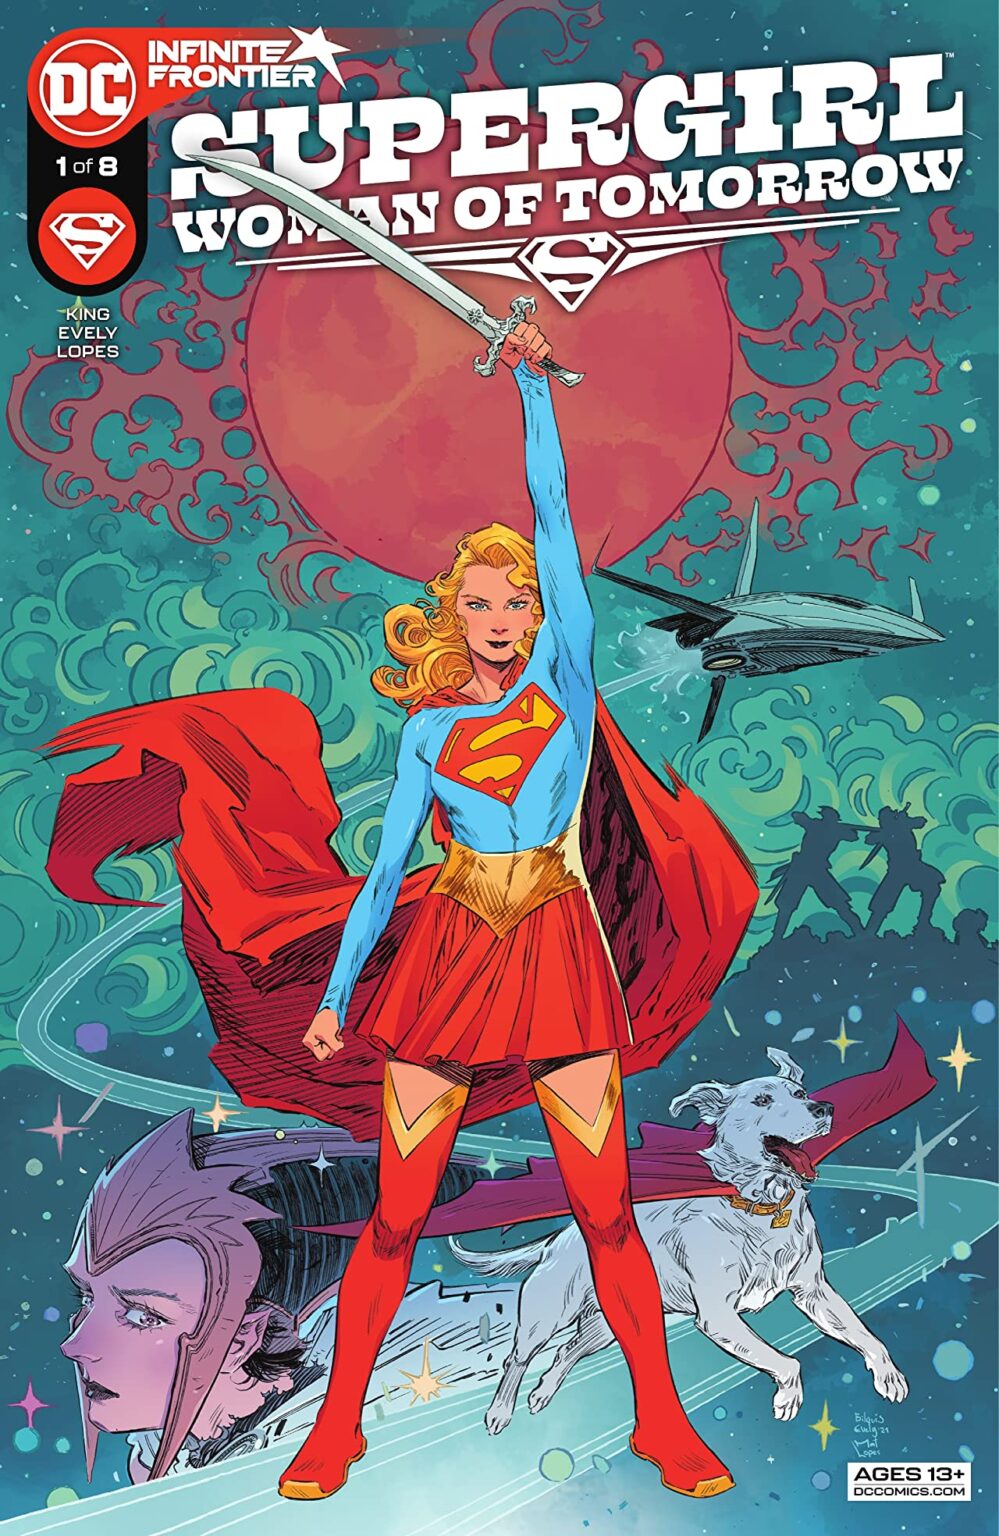 100 - Les comics que vous lisez en ce moment - Page 19 Supergirl-999x1536